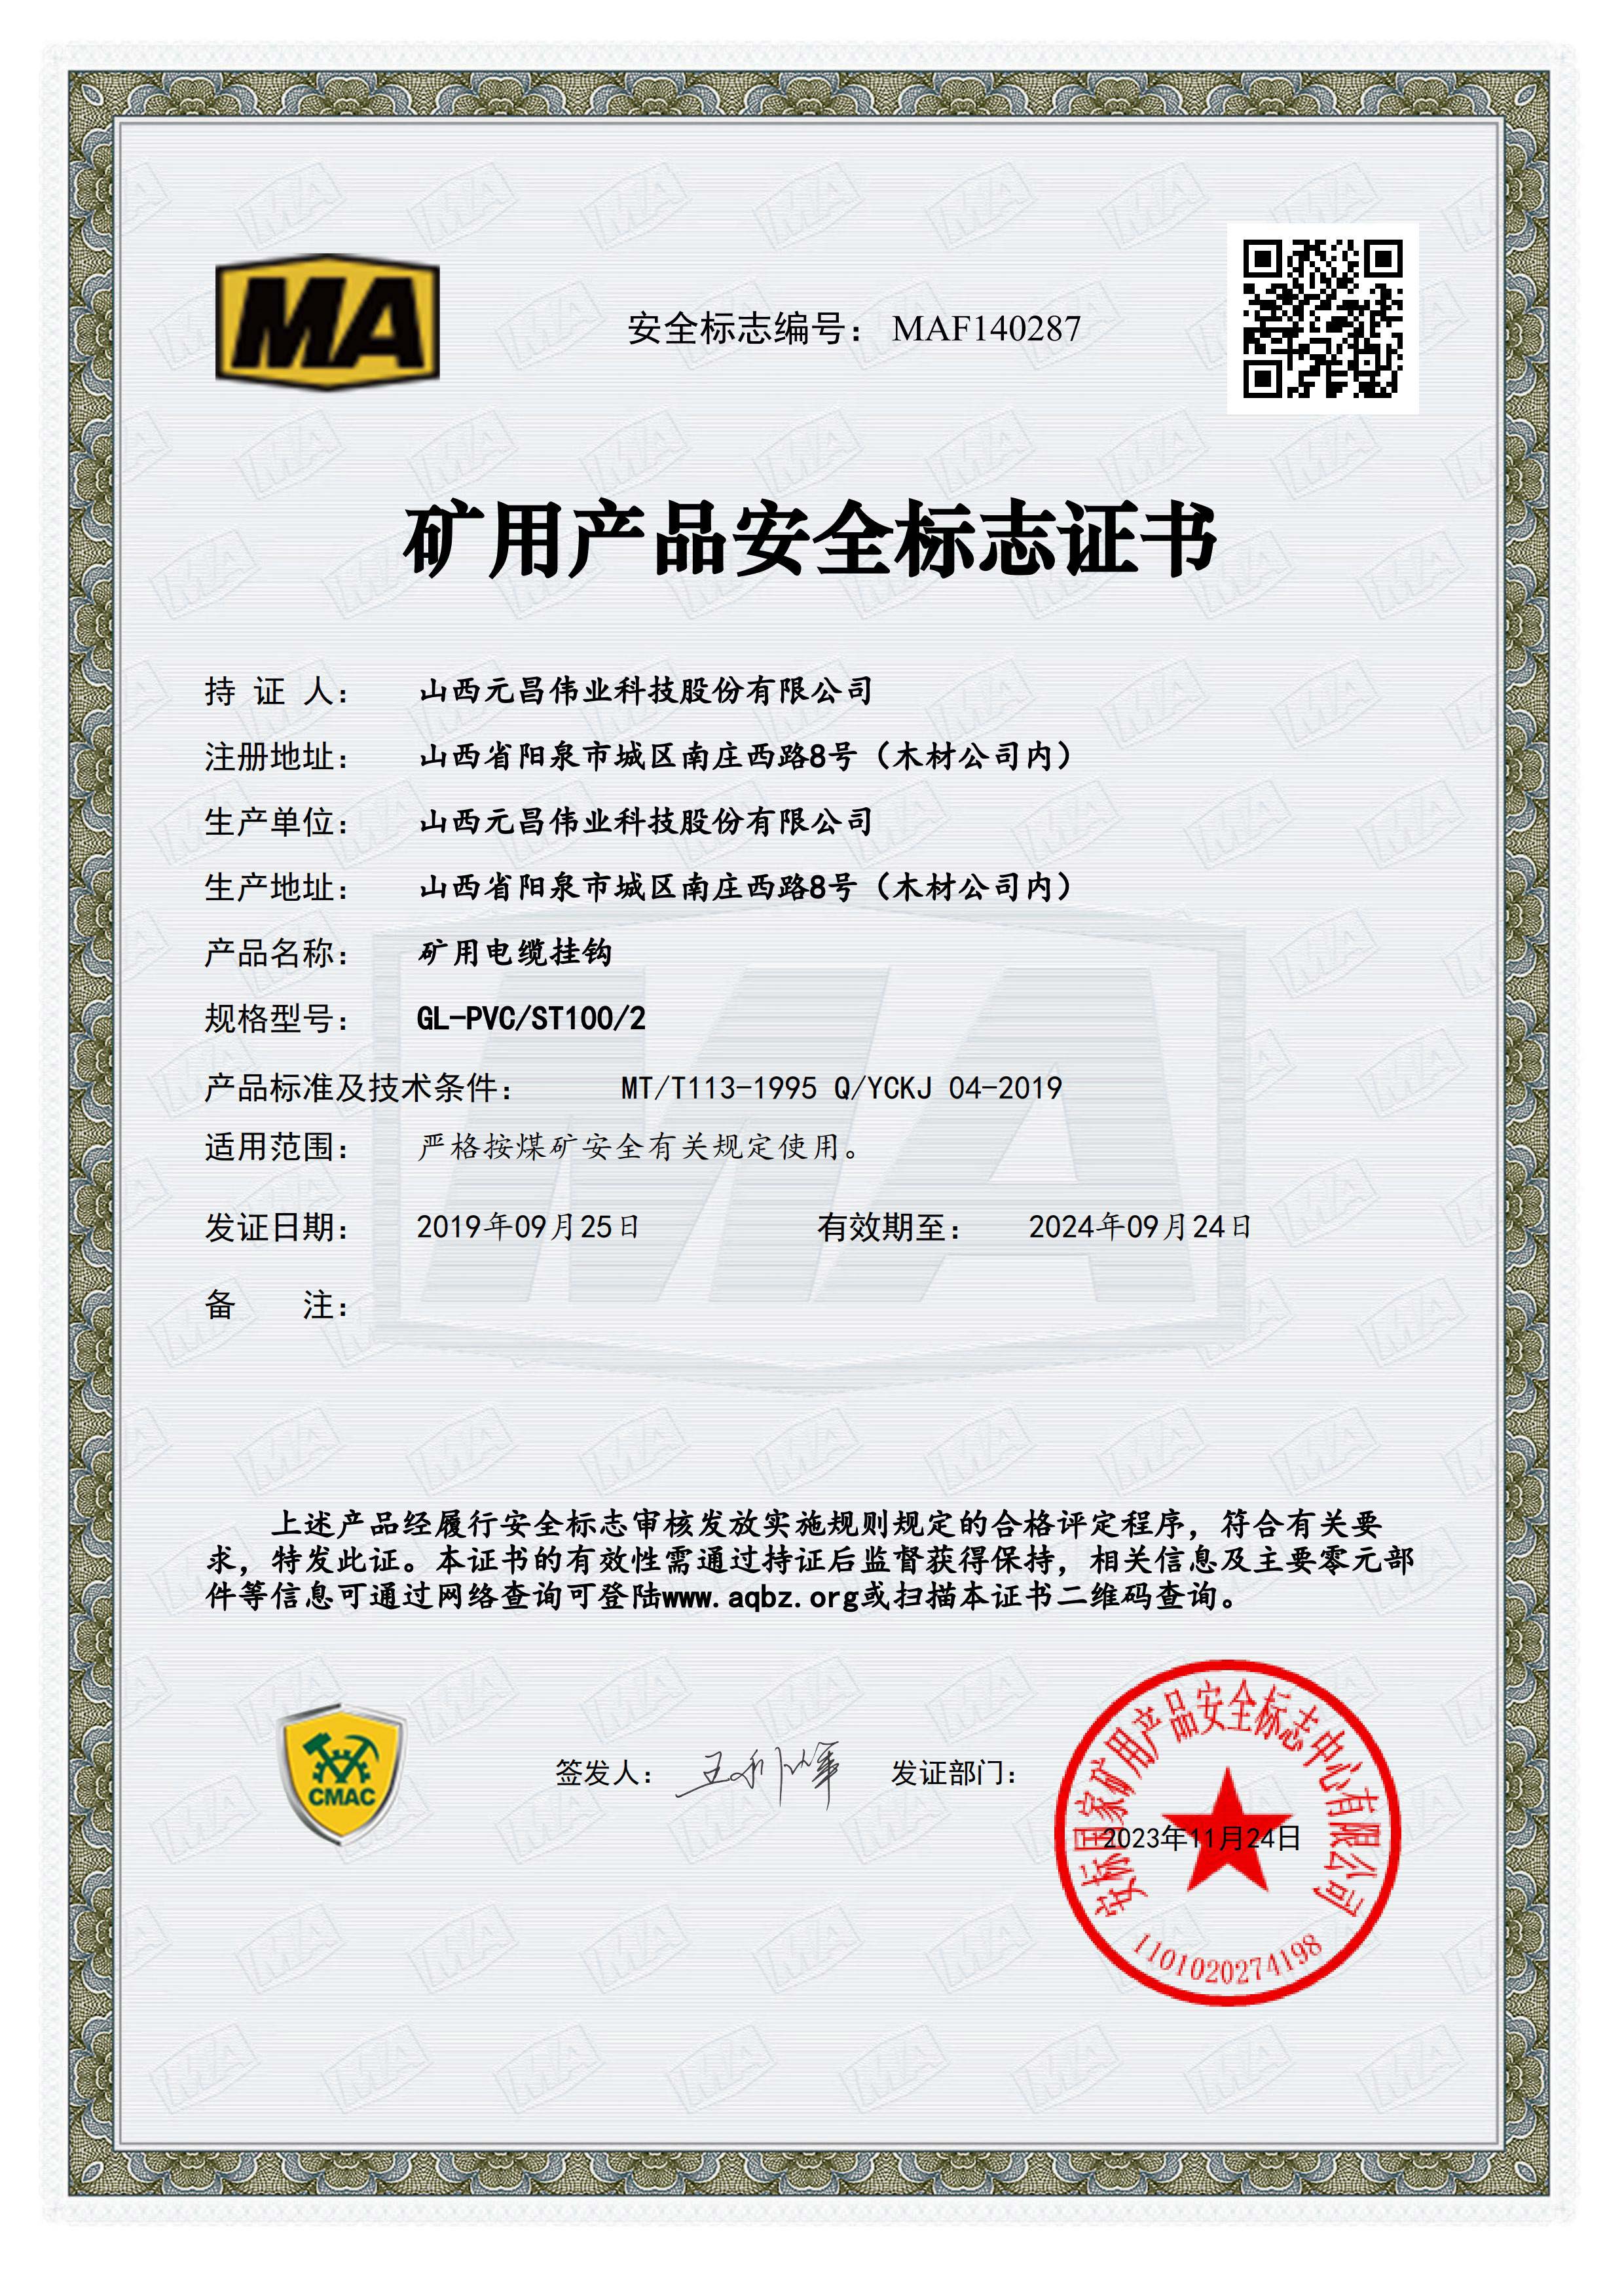 矿用产品安全标志证书[GL-PVG/ST100/2]